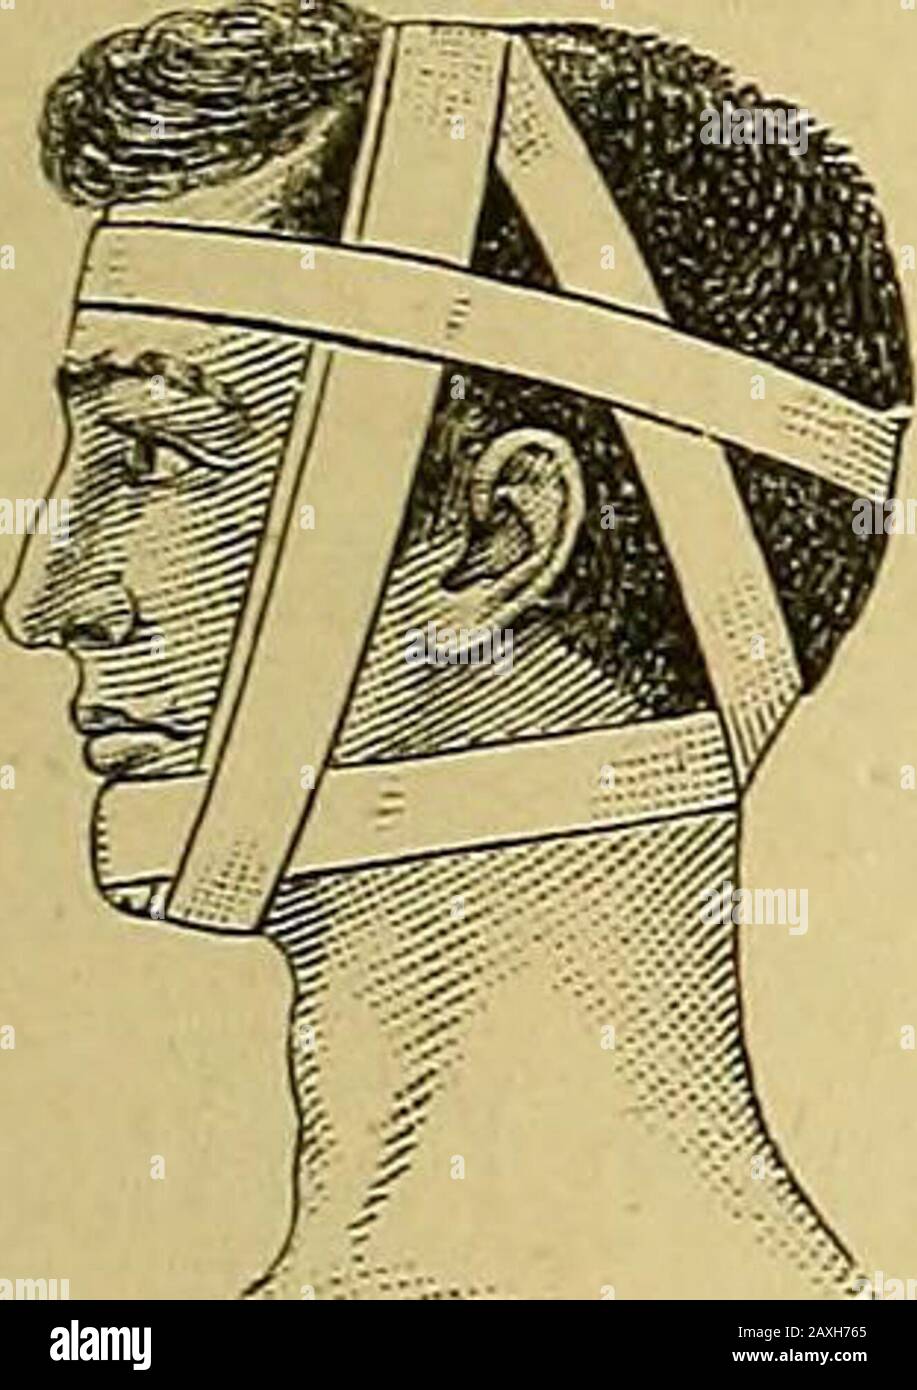 Le manuel du chirurgien sur le traitement des blessés en guerre : un essai de prix . Rouleau à double tête. Bande passante sagittale. Bandage noué. Fig. 90. c. Le bandage noué (fascia nodosa) (fig. 89) est un rouleau à double tête, dont les virages sont traversés à angle droit sur la plaie, et bien tiré, comme dans le ficelage d'un colis (Paekkkoten). Il est particulièrement adapté à l'hémorragie, où une pression considérable est nécessaire. ForThe meme but, un cravat serré ou un morceau de l'inde-rubberbandage peut être utilisé. D. Le bandage de l'haltère (capistrum) (fig. 90).Le premier virage commence sur le dessus de la tête,cros Banque D'Images